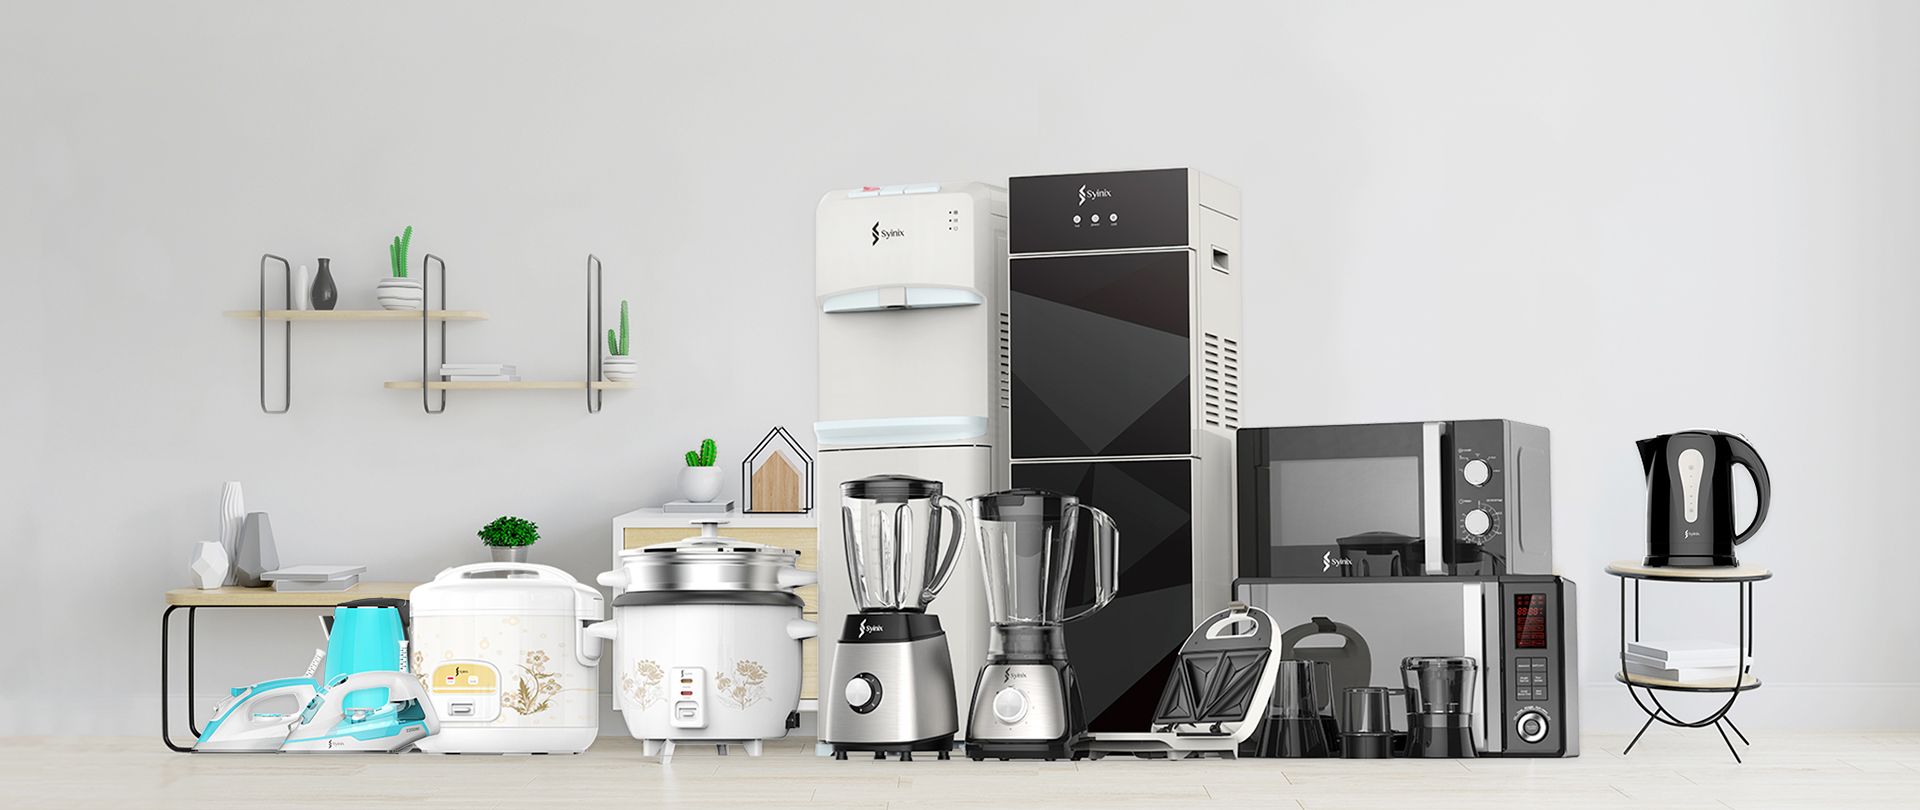 Buy Home Appliances Online Dubai